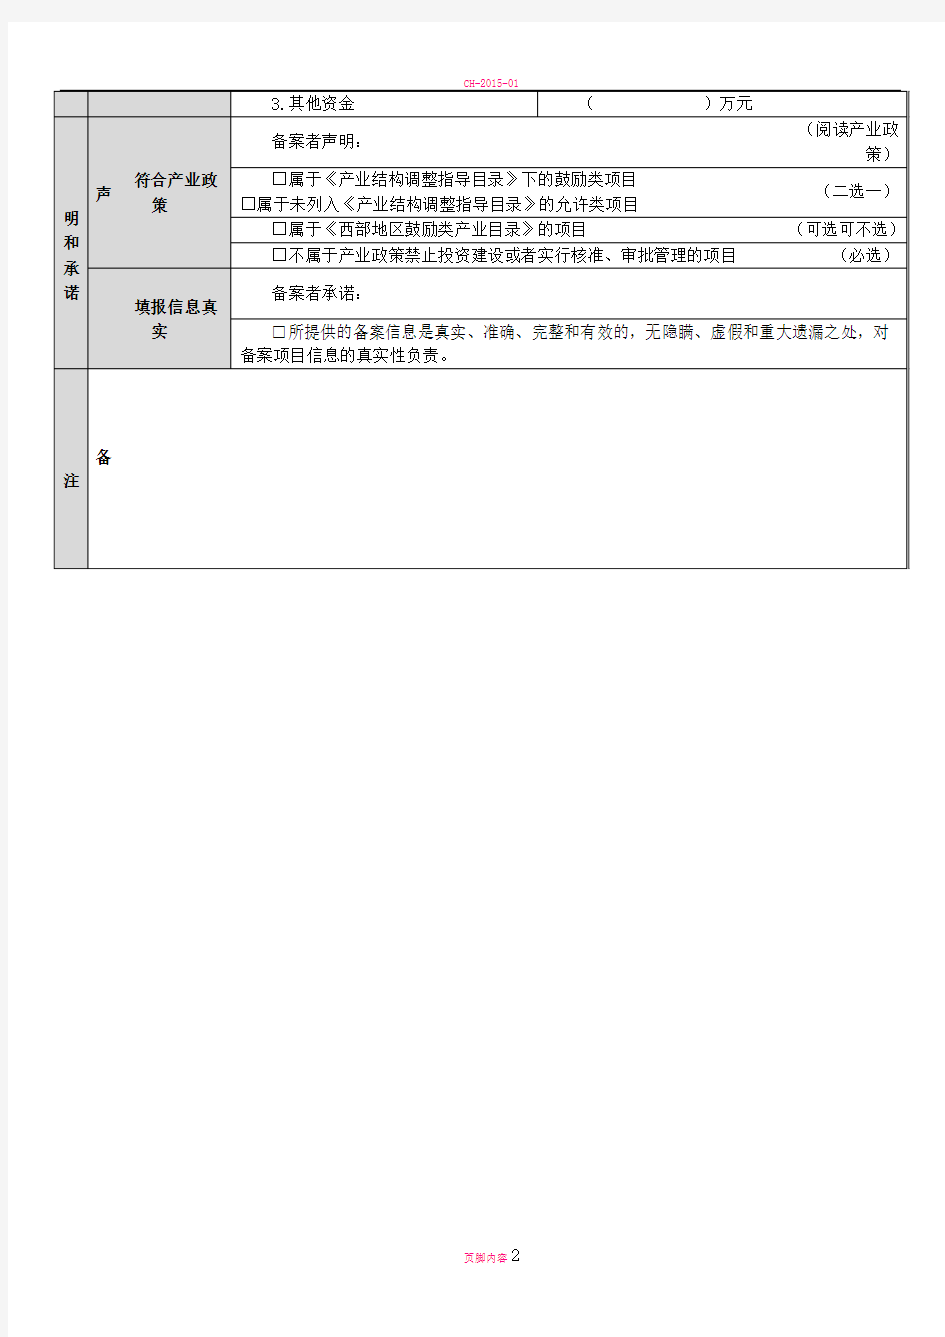 四川省固定资产投资项目备案表+-+填报版本